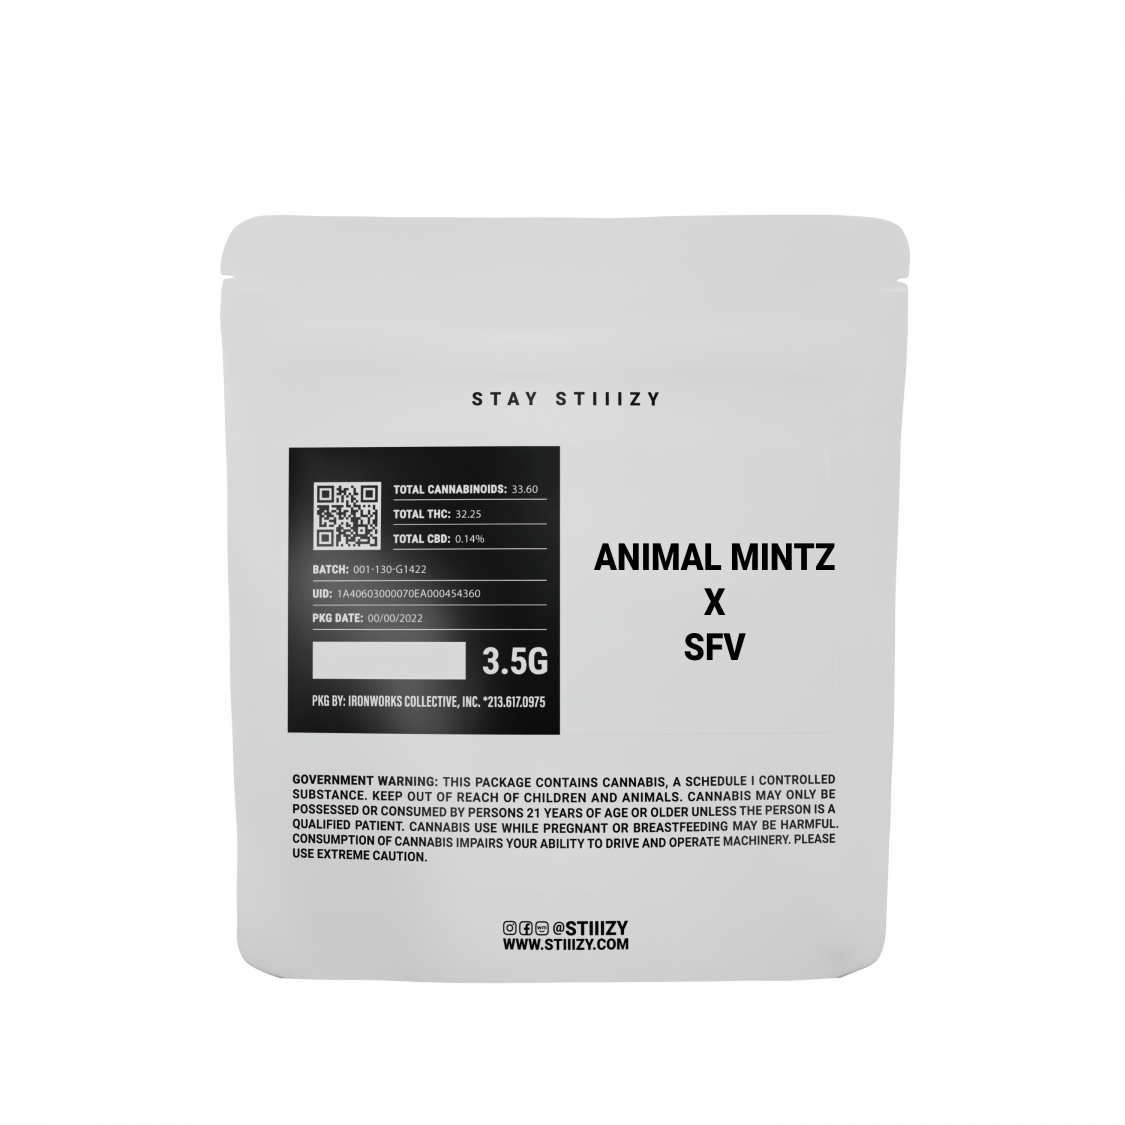 STIIIZY Animal Mintz x SFV Flower Pre-pack